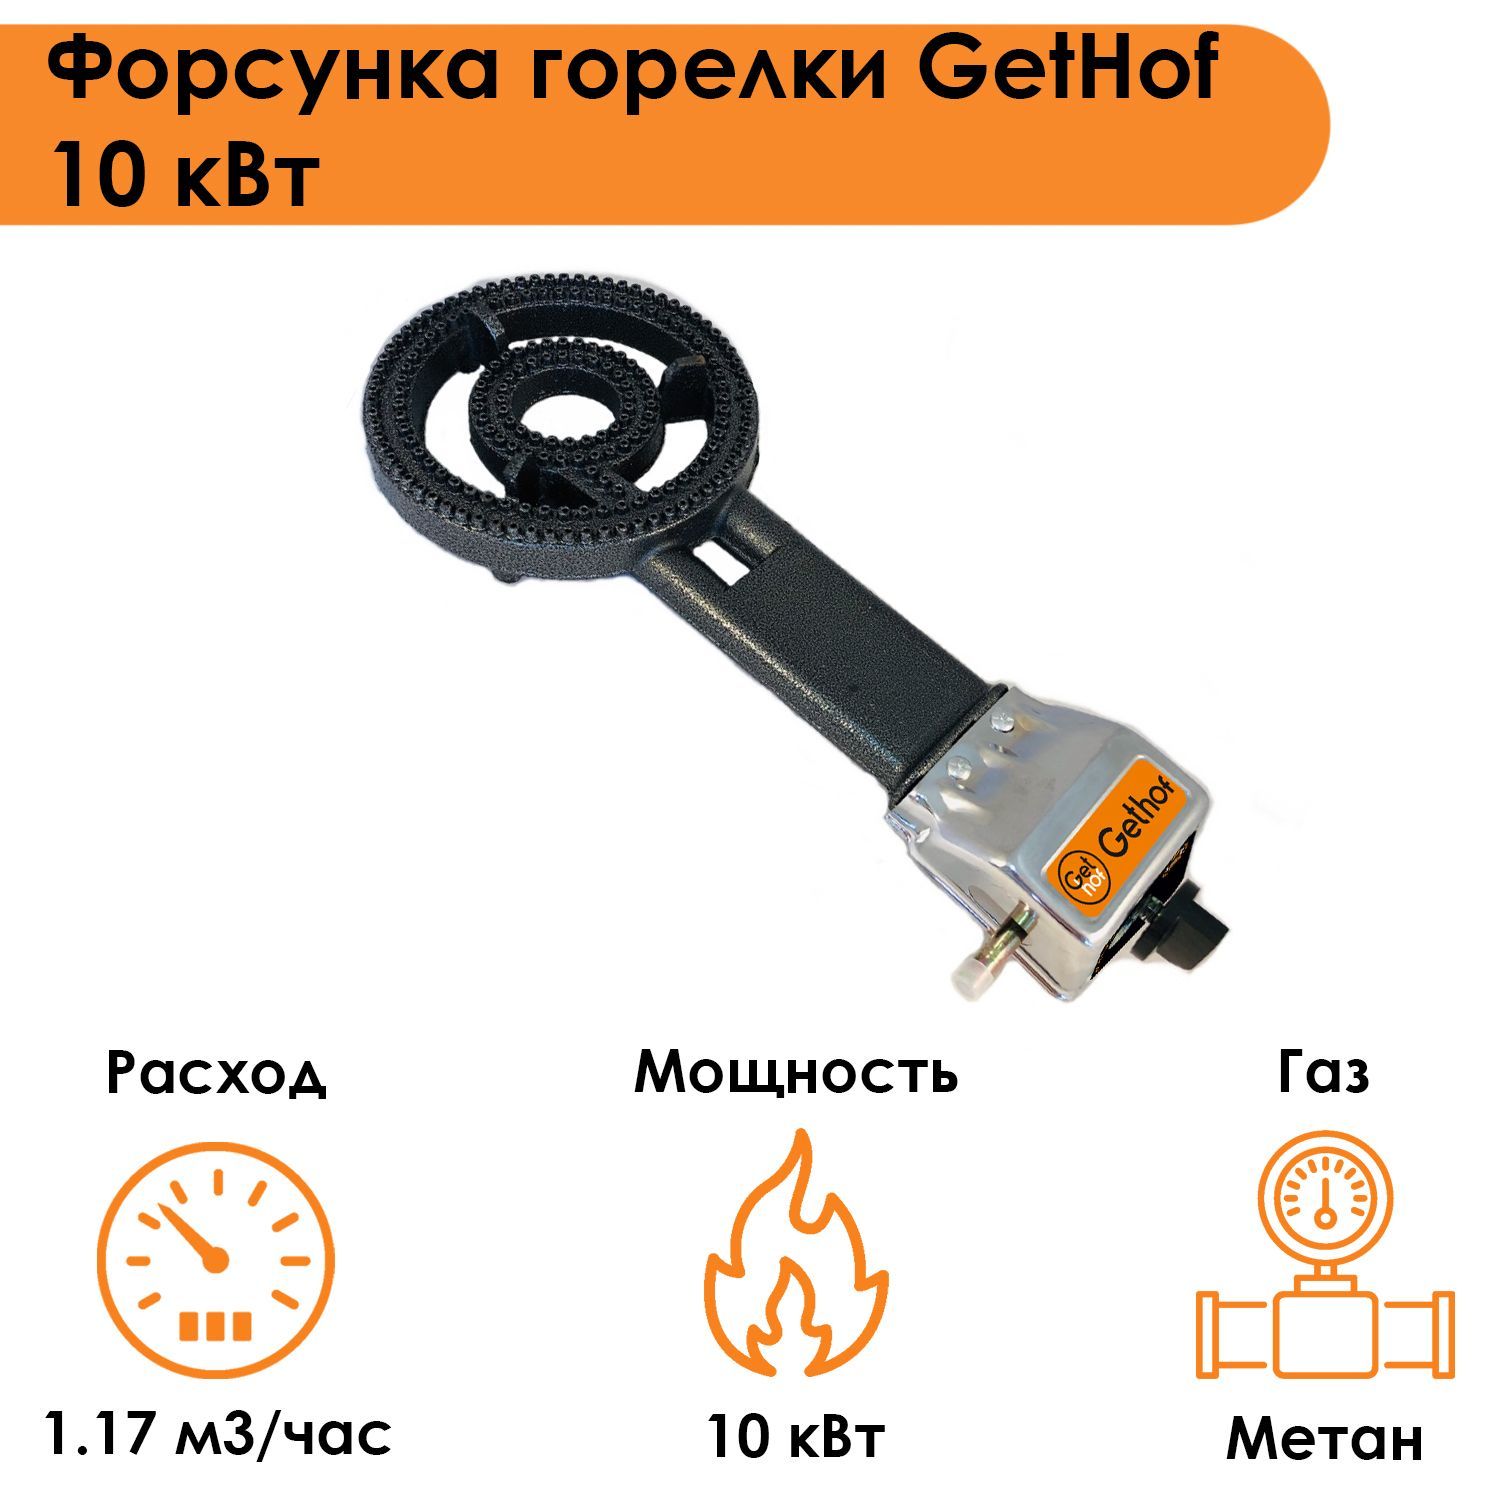 Форсунка горелки GetHof 10 кВт GB-10M (метан).